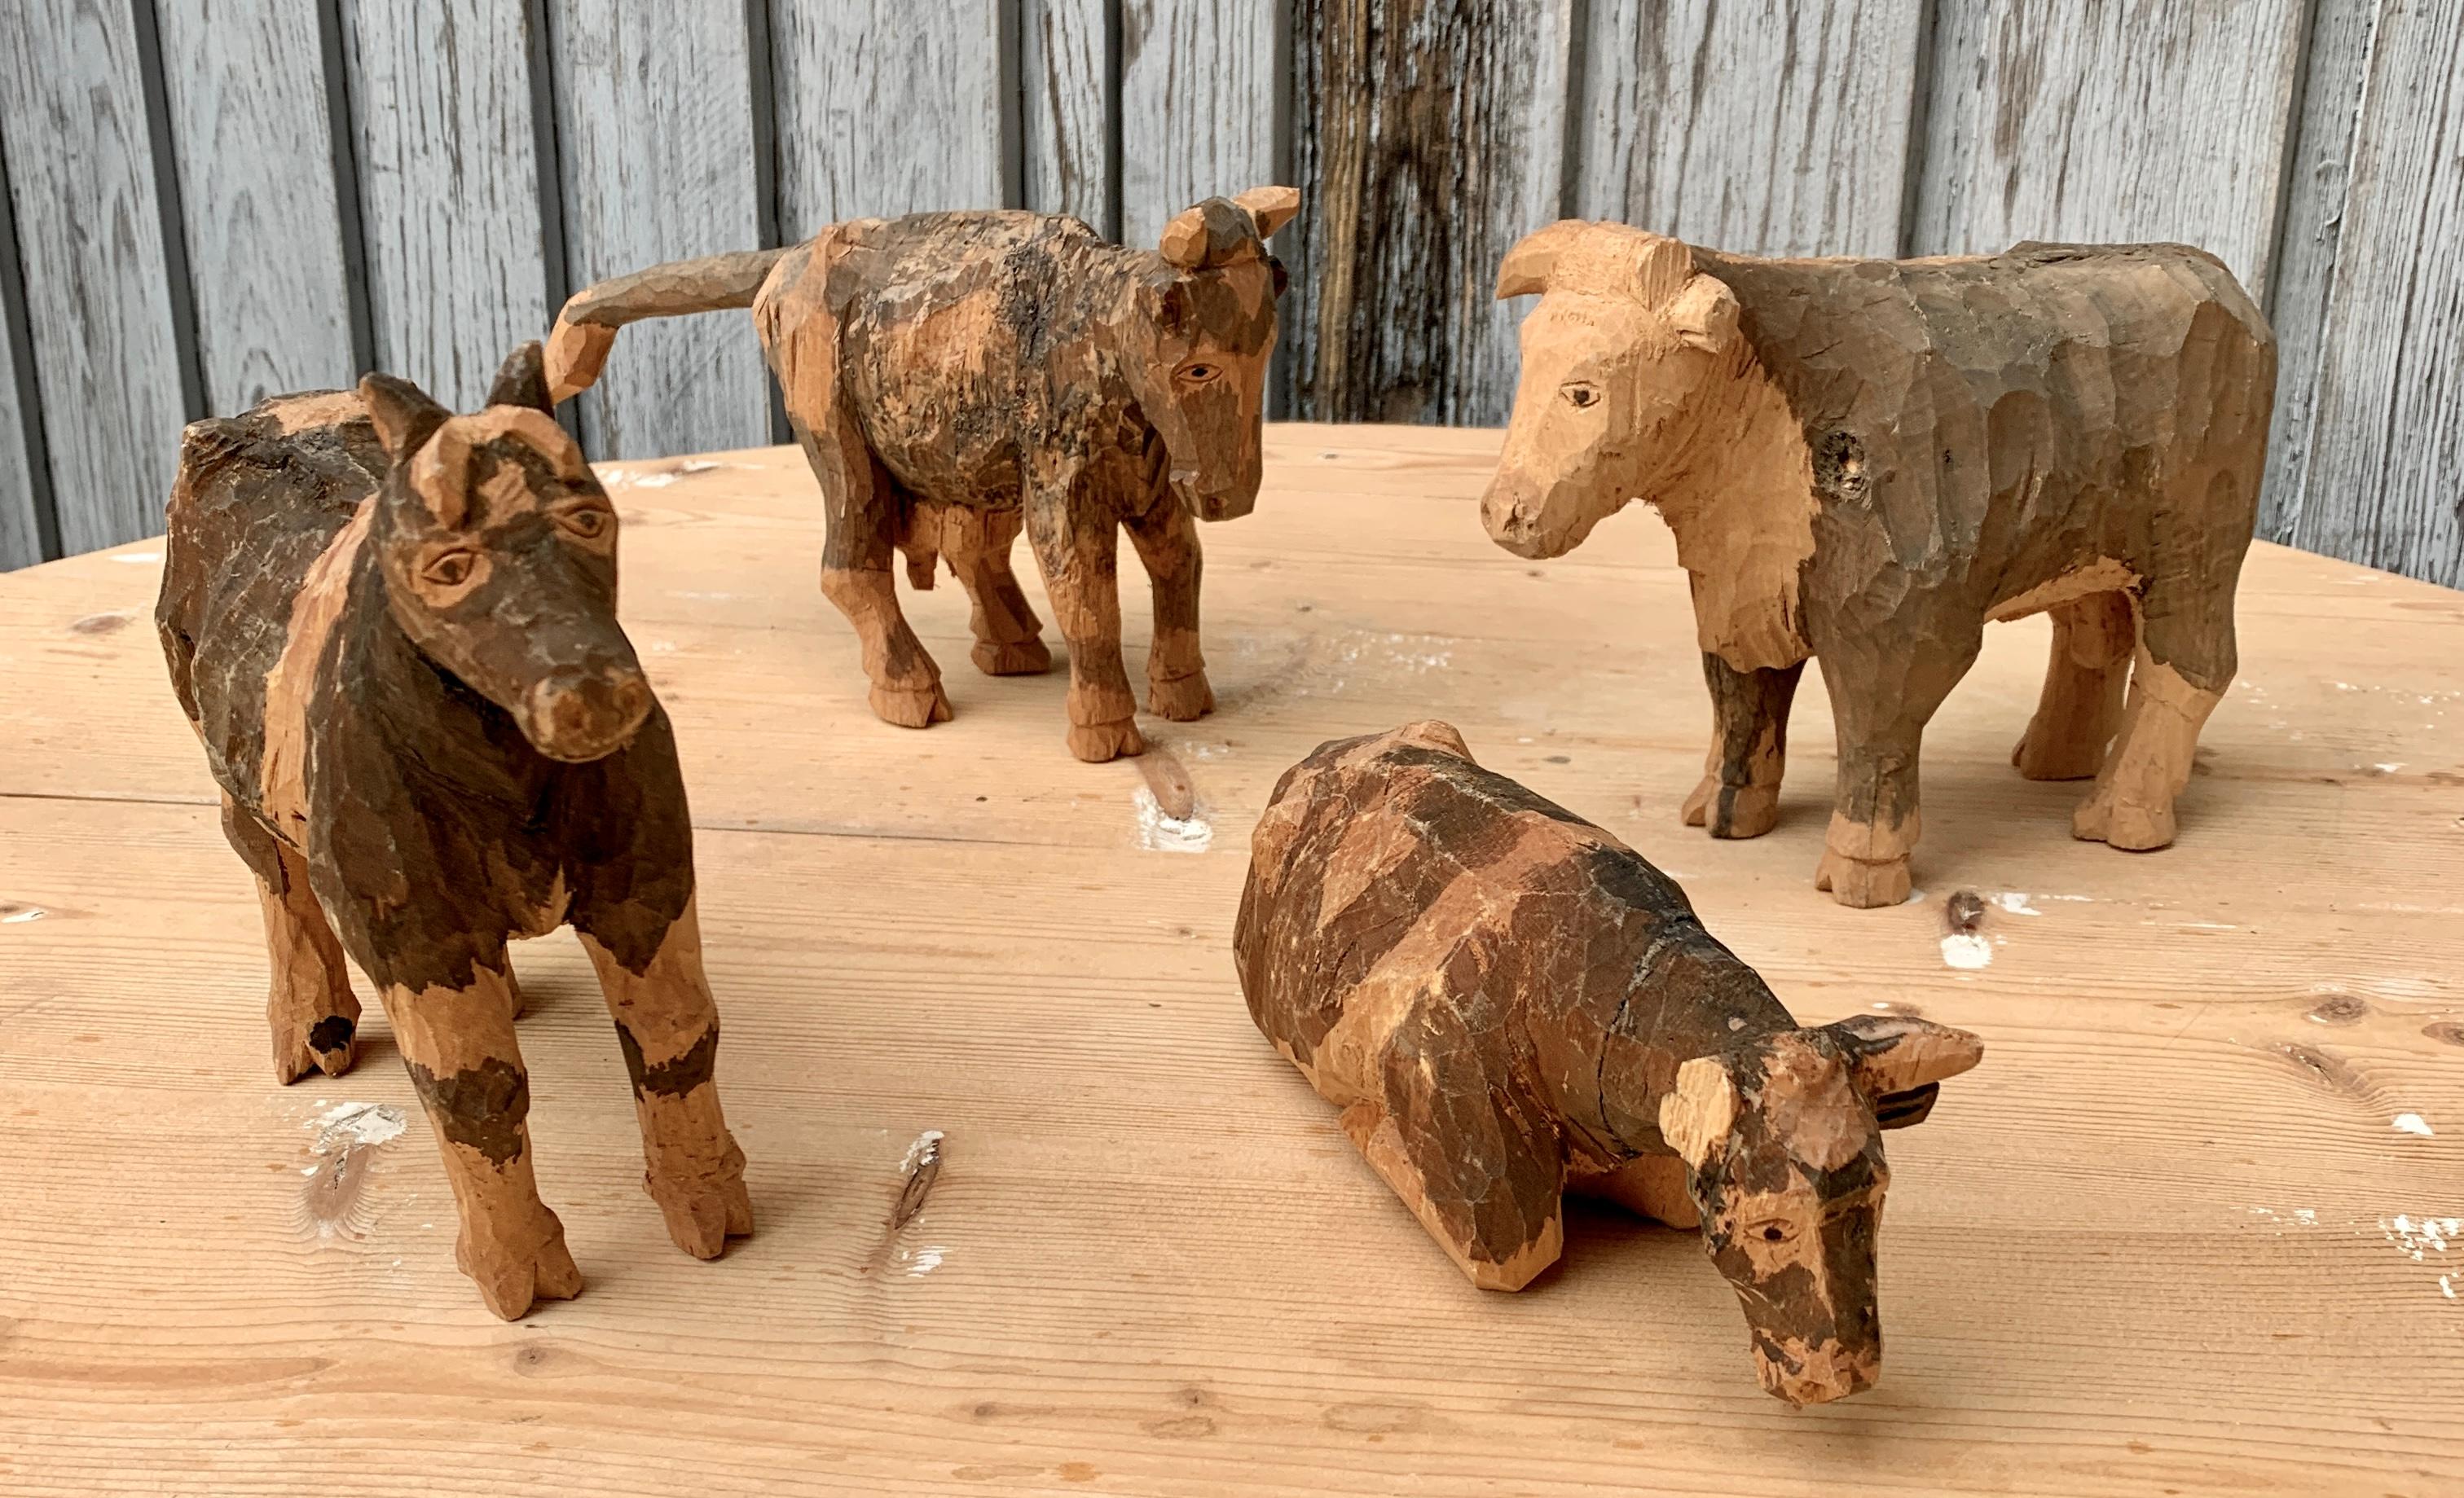 Ensemble suédois de quatre figurines en bois sculpté et peint représentant un taureau et trois vaches, datant du début du XXe siècle. La Suède a une longue tradition bien connue de sculpture en bois d'art populaire. Cela a commencé dans la classe